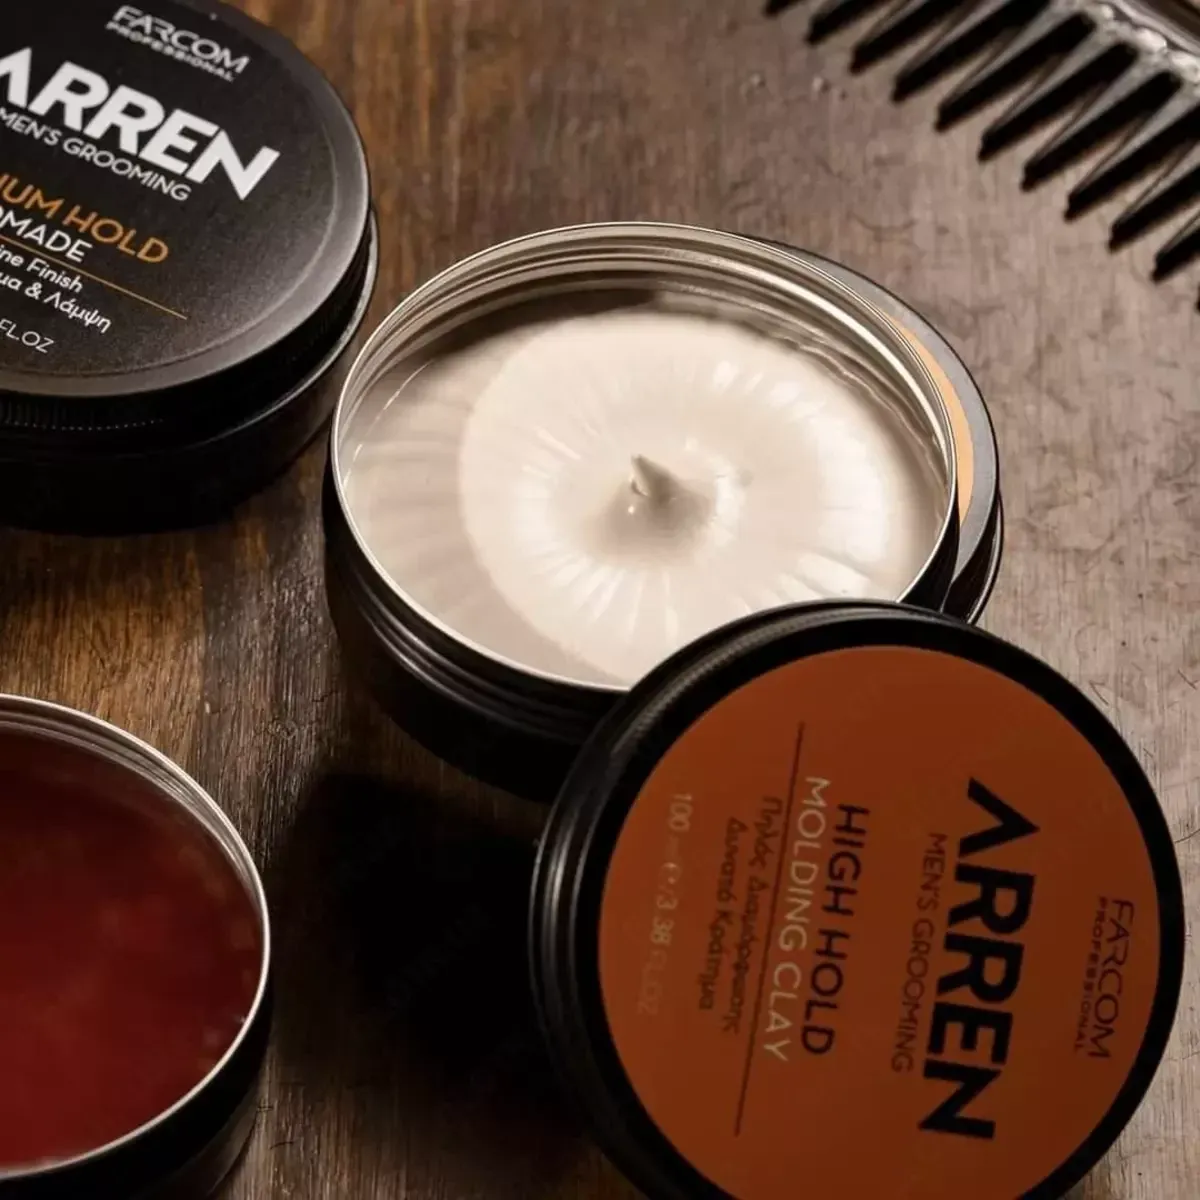 Глина для укладки волос сильной фиксации - Arren Men's Grooming Molding Clay High Hold#1